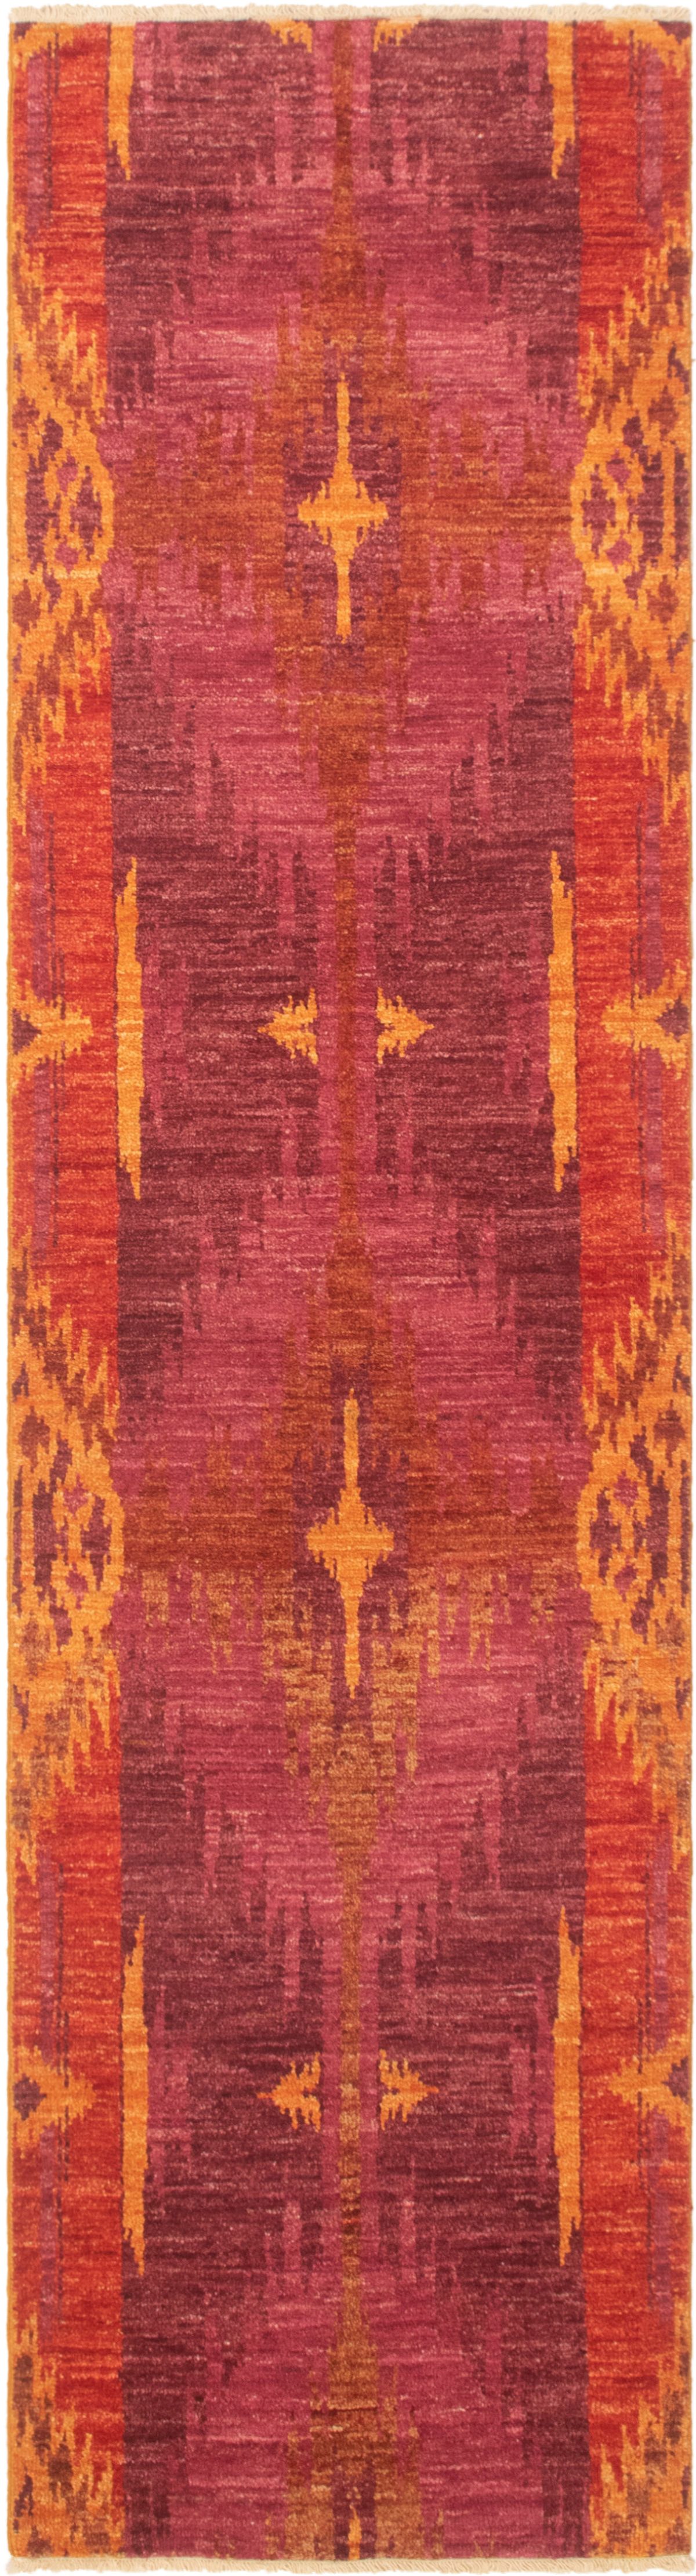 Hand-knotted Shalimar Dark Copper, Dark Pink Wool Rug 2'7" x 9'10" Size: 2'7" x 9'10"  